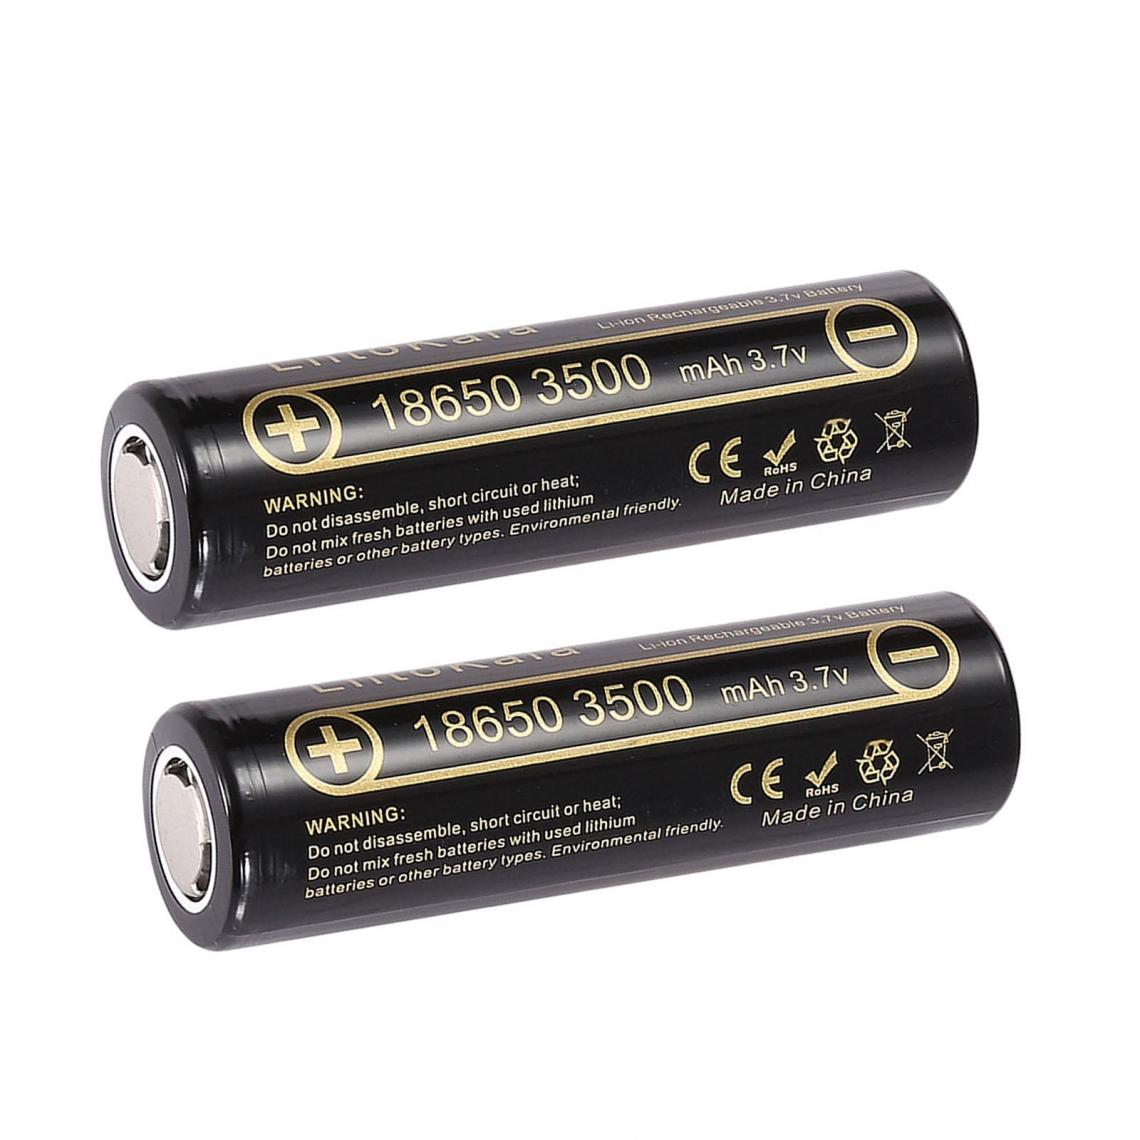 marque generique - Batterie au lithium Lii-50E 21700 5000mAH - Piles rechargeables